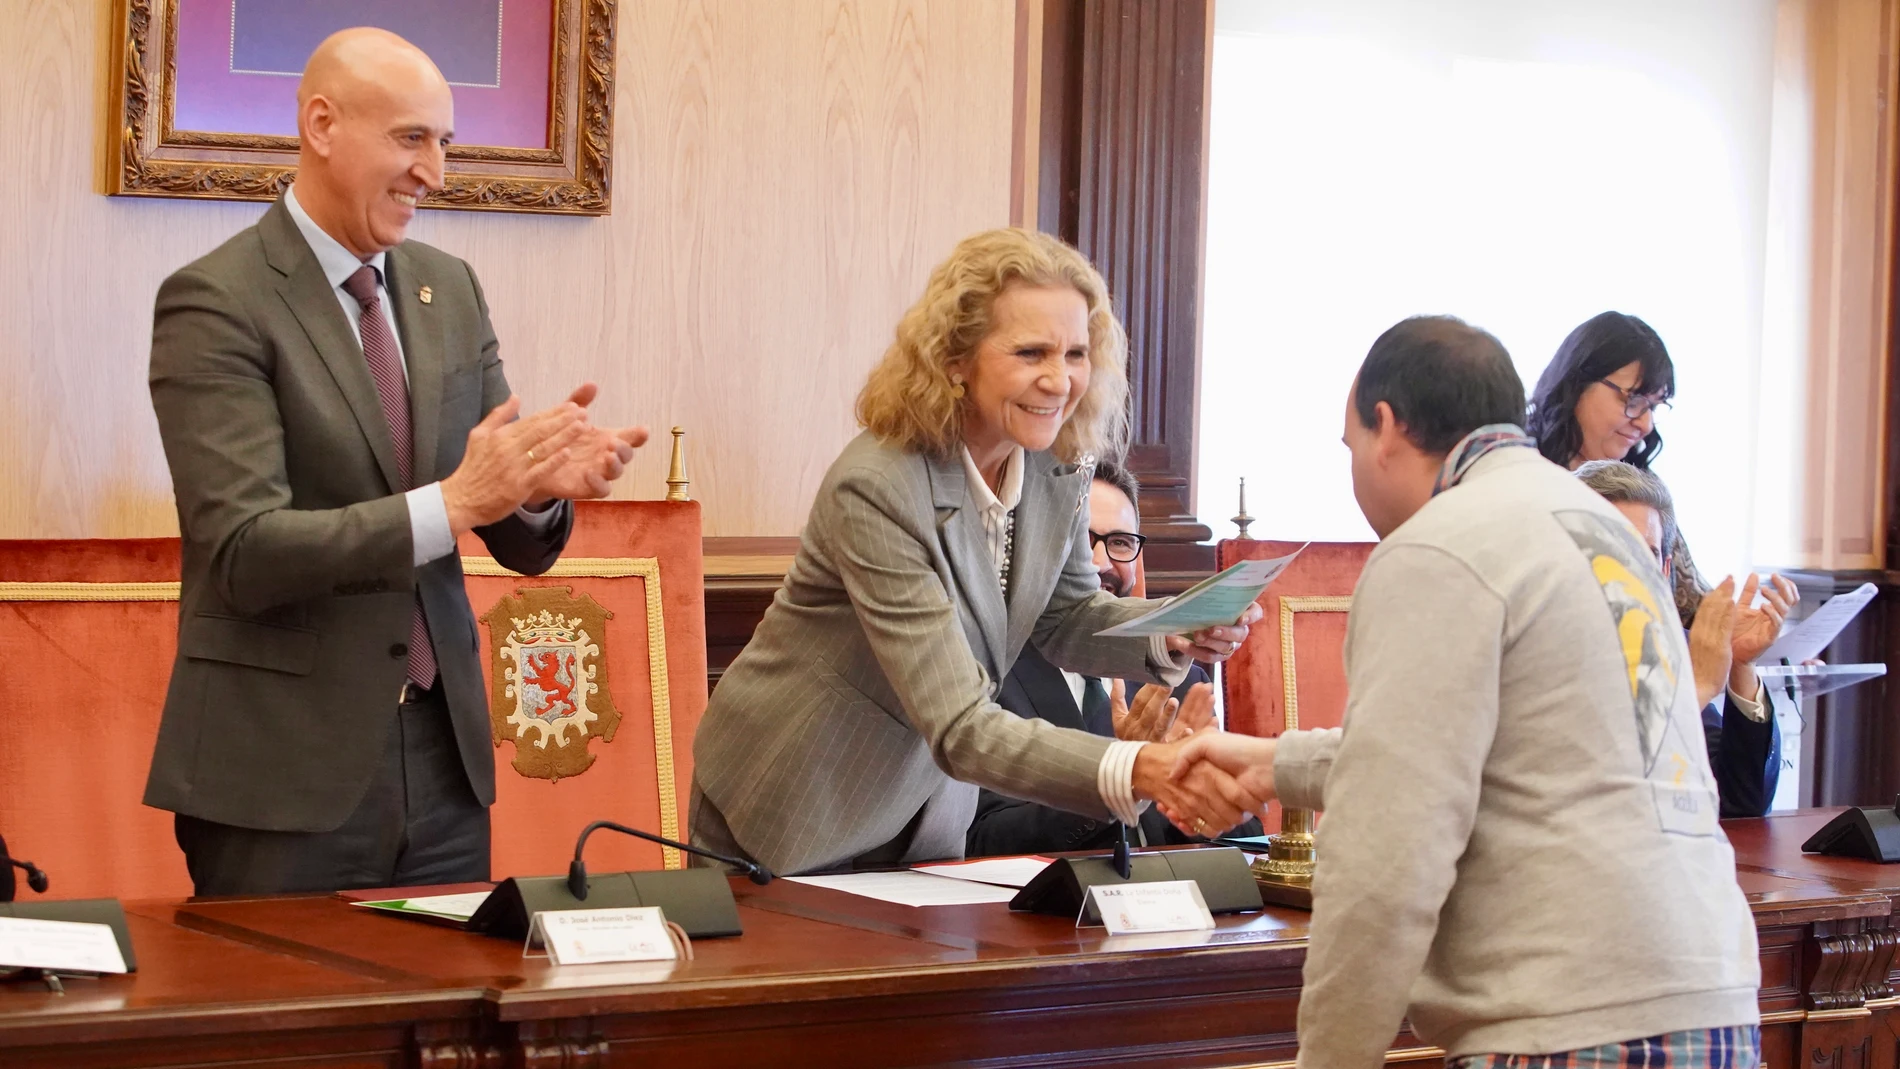 Elena de Borbón entrega uno de los diplomas en presencia del alcalde de León, José Antonio Diez